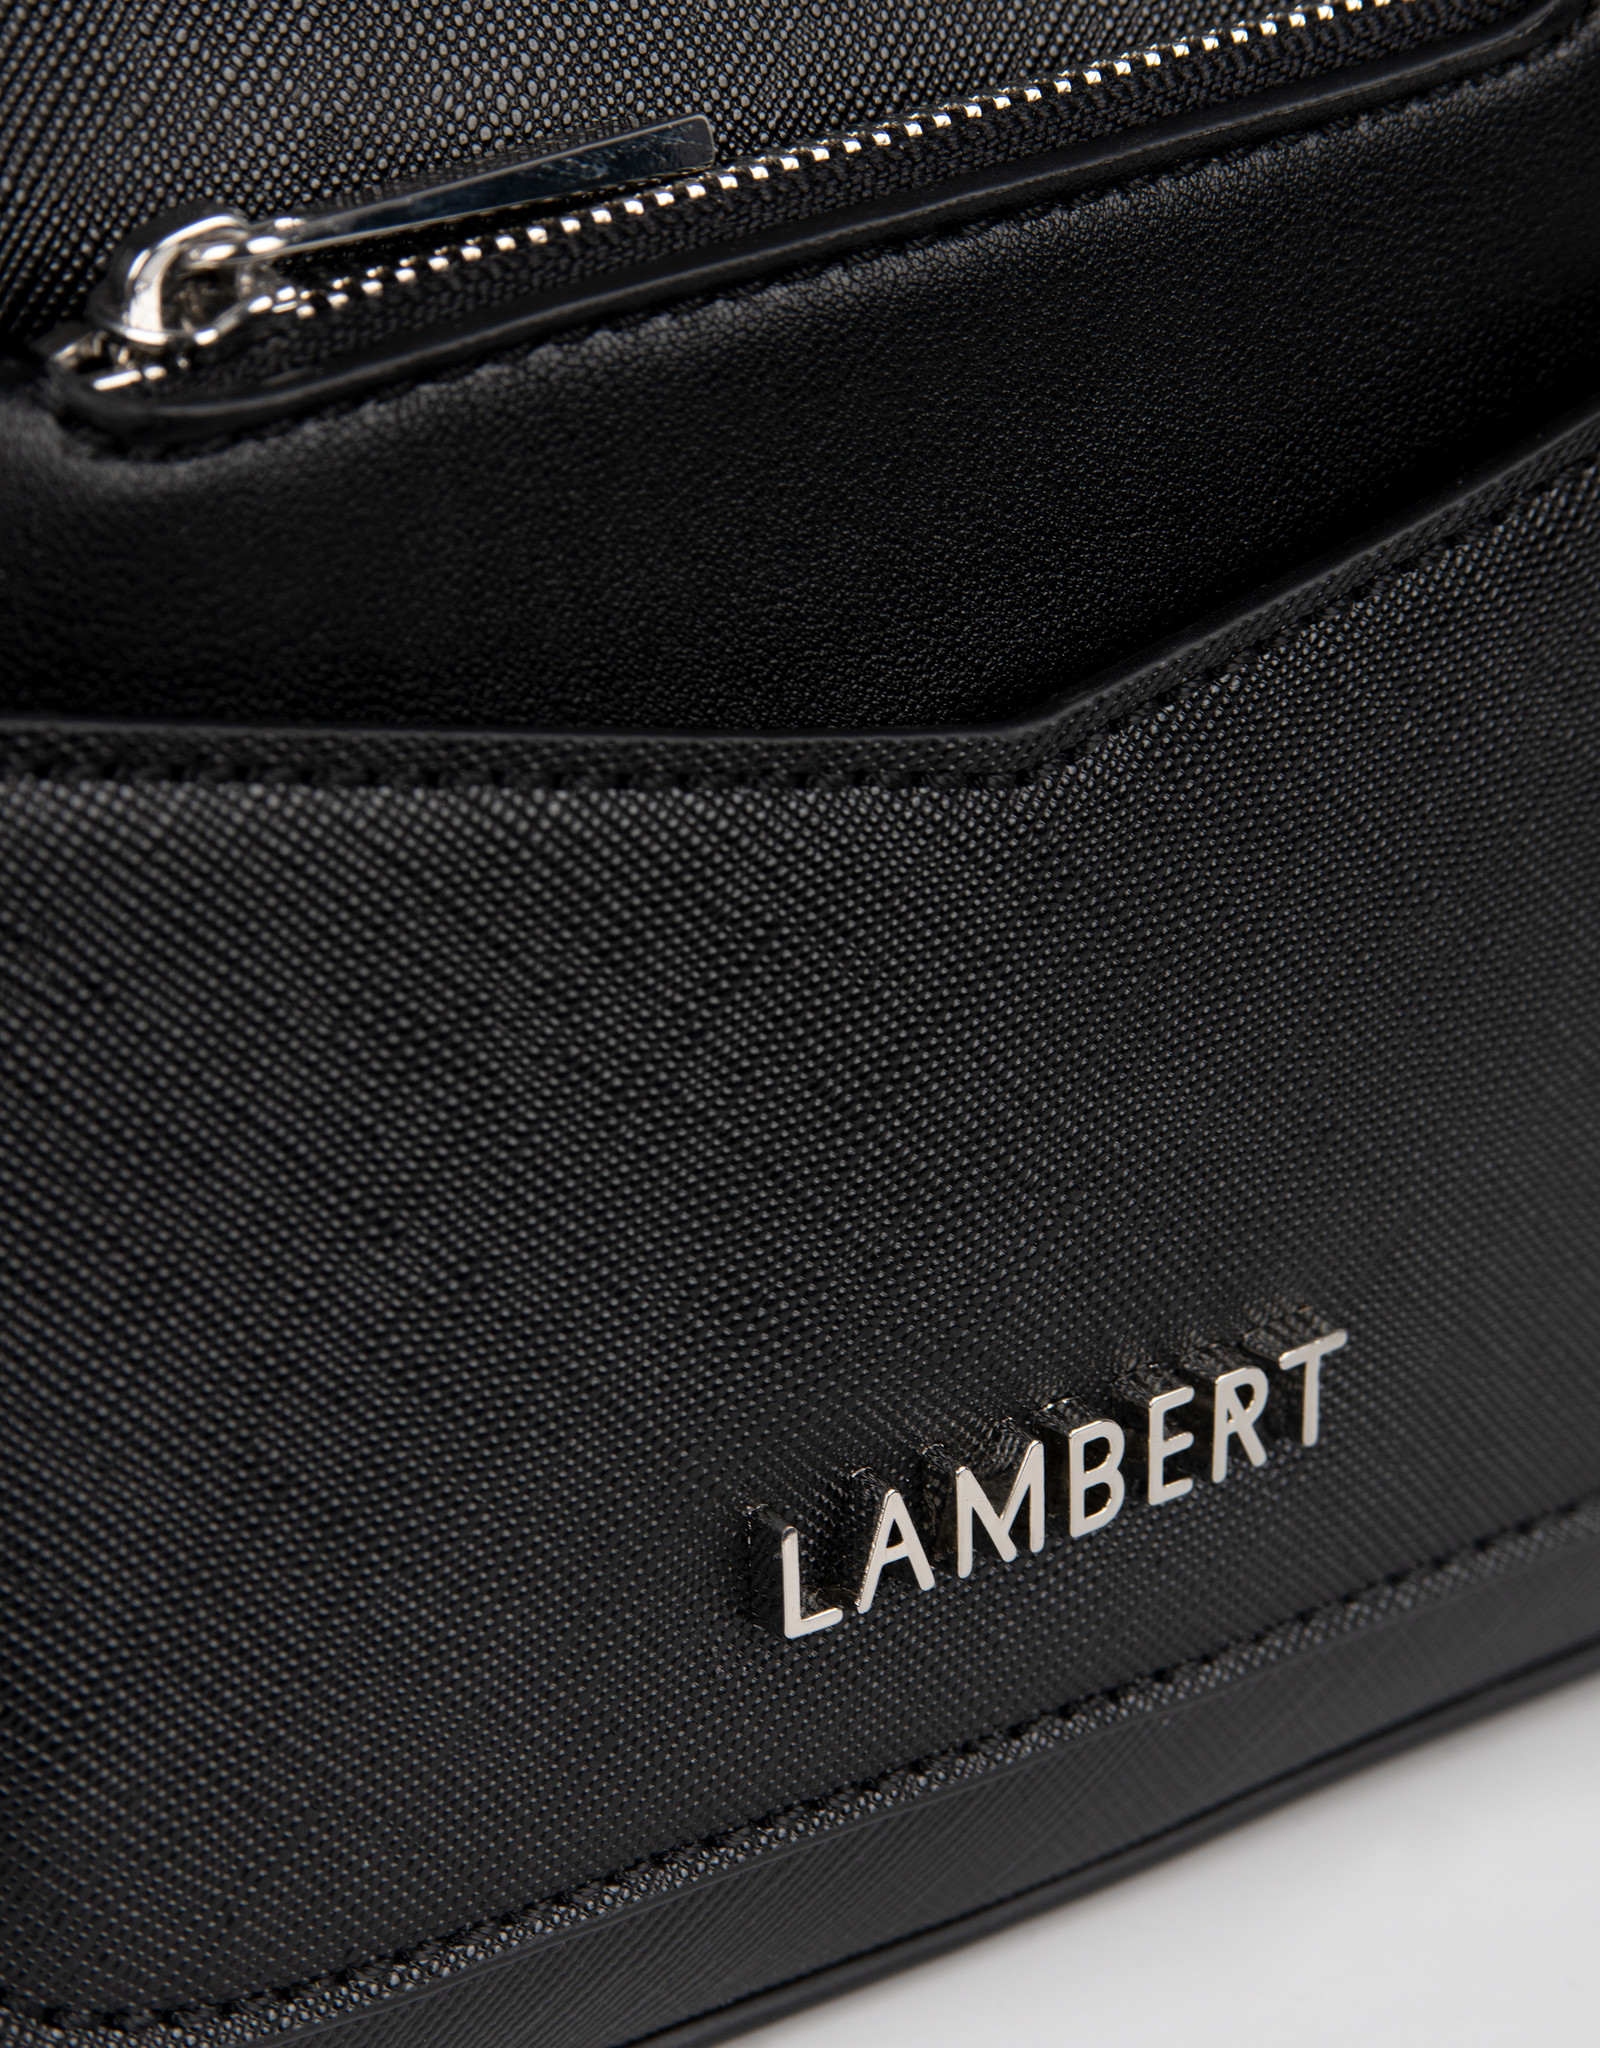 Lambert Nicole Shoulder Bag